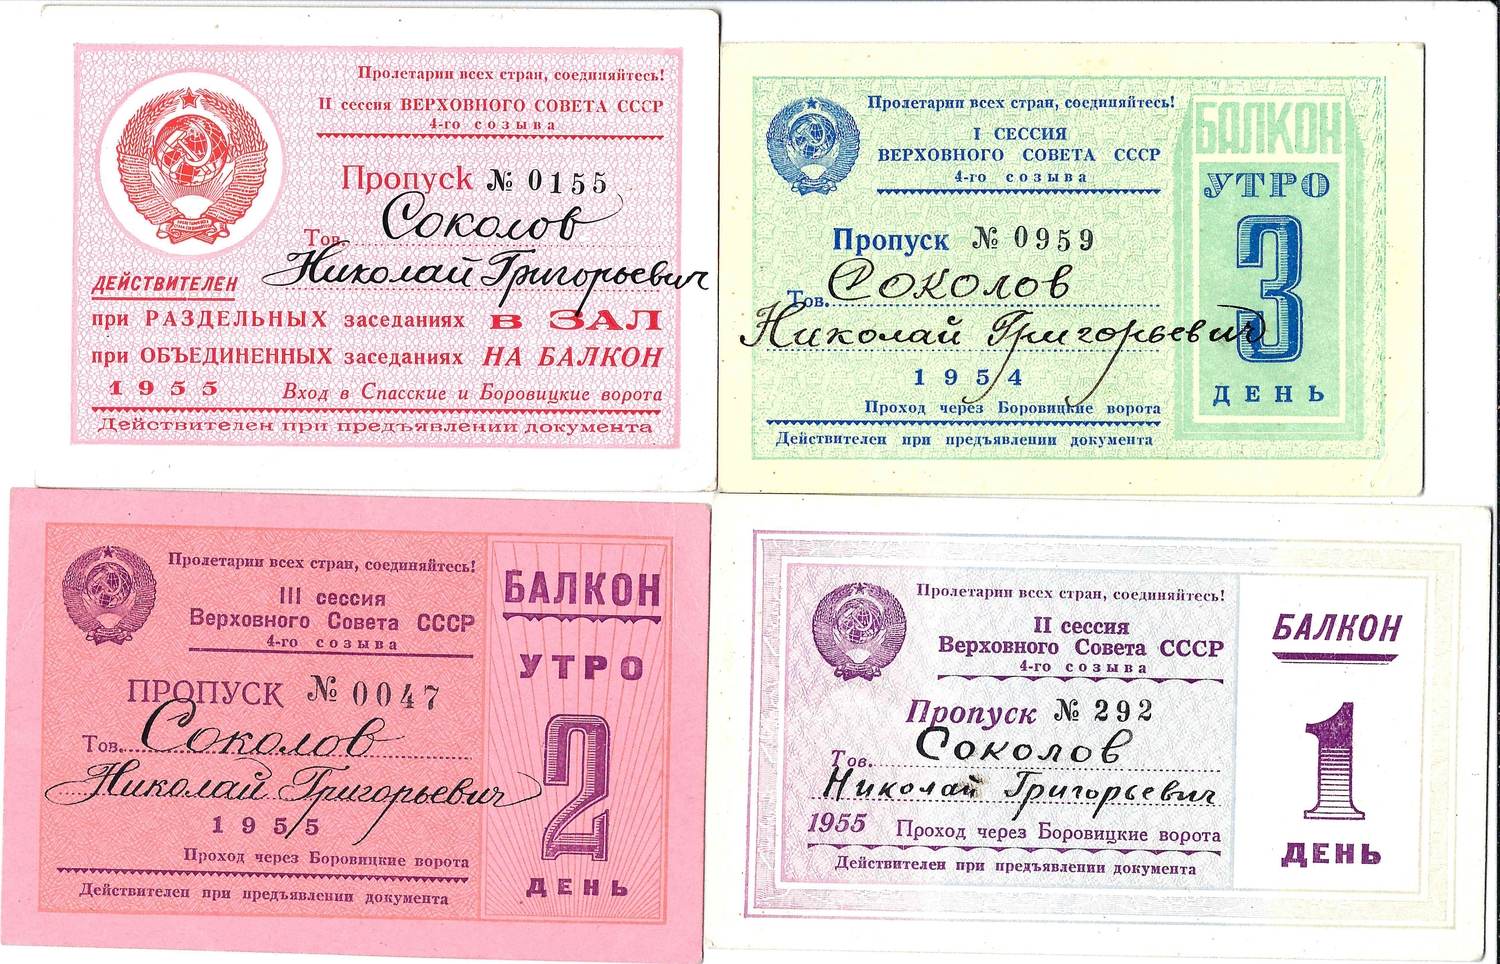 4 пропуска на заседания Верховного Совета СССР четвёртого созыва различных созывов на имя Николая Григорьевича Соколова. 1954 - 1955 годы.